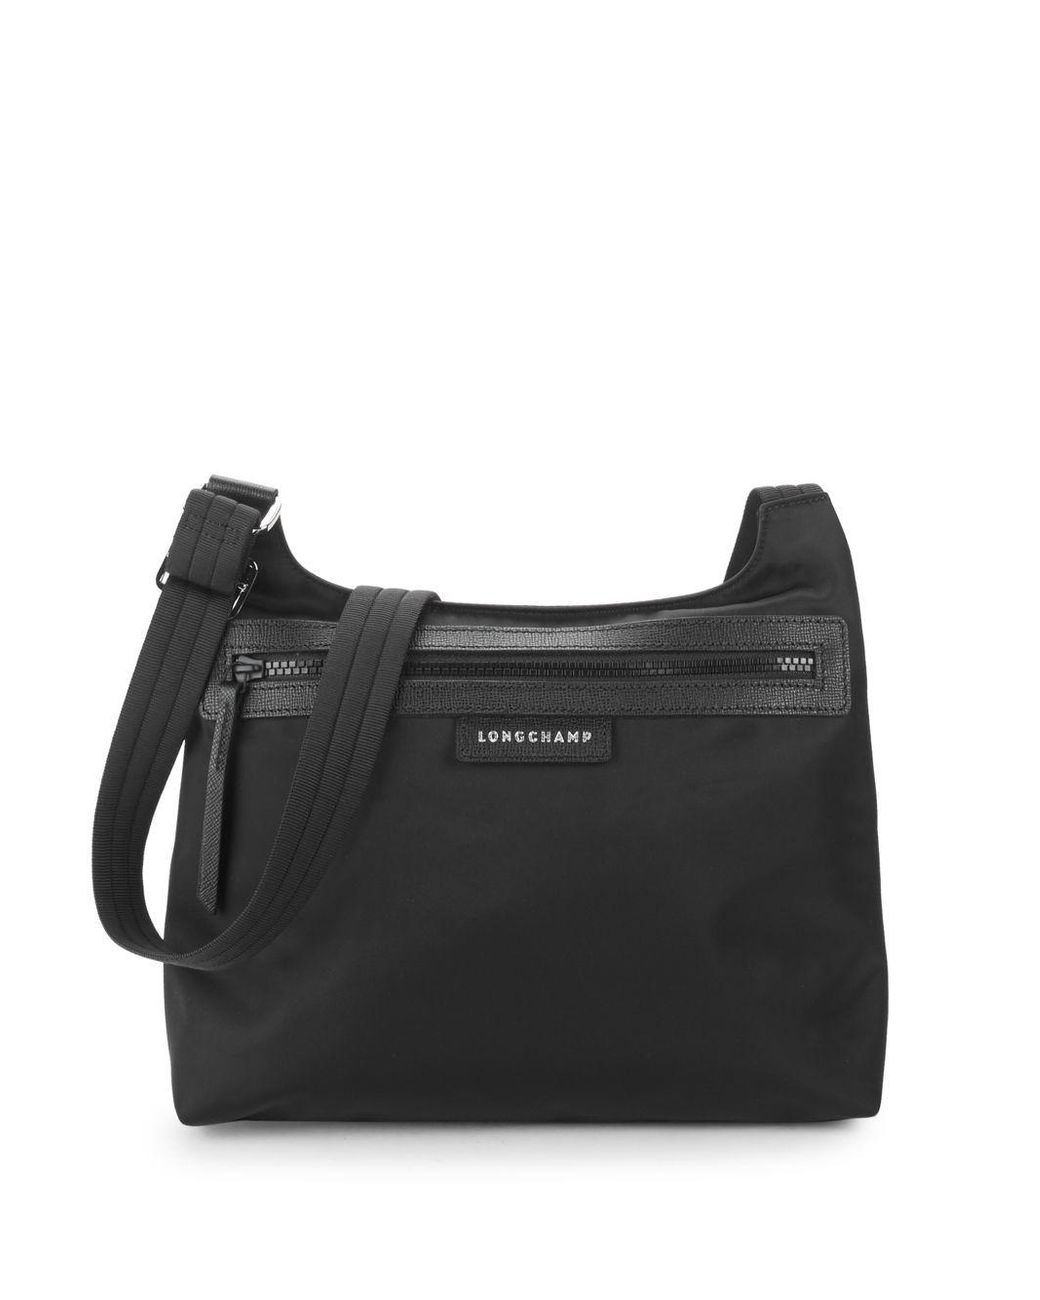 Longchamp Small Le Pliage Neo Shoulder Bag on SALE